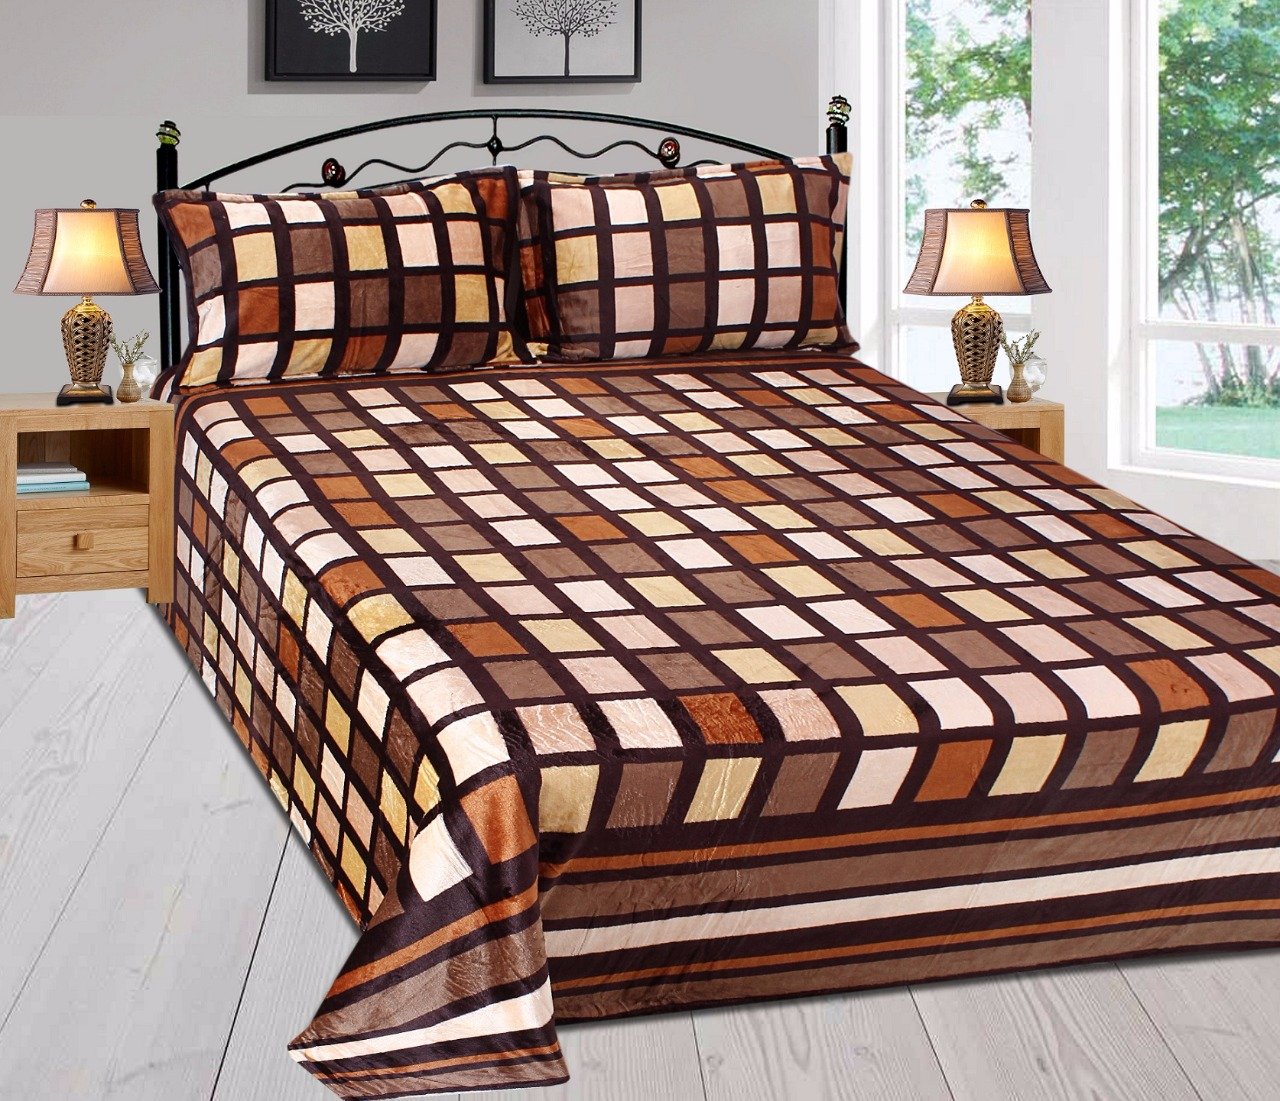 Picturesque Shades of Brown- Woollen Bedsheet